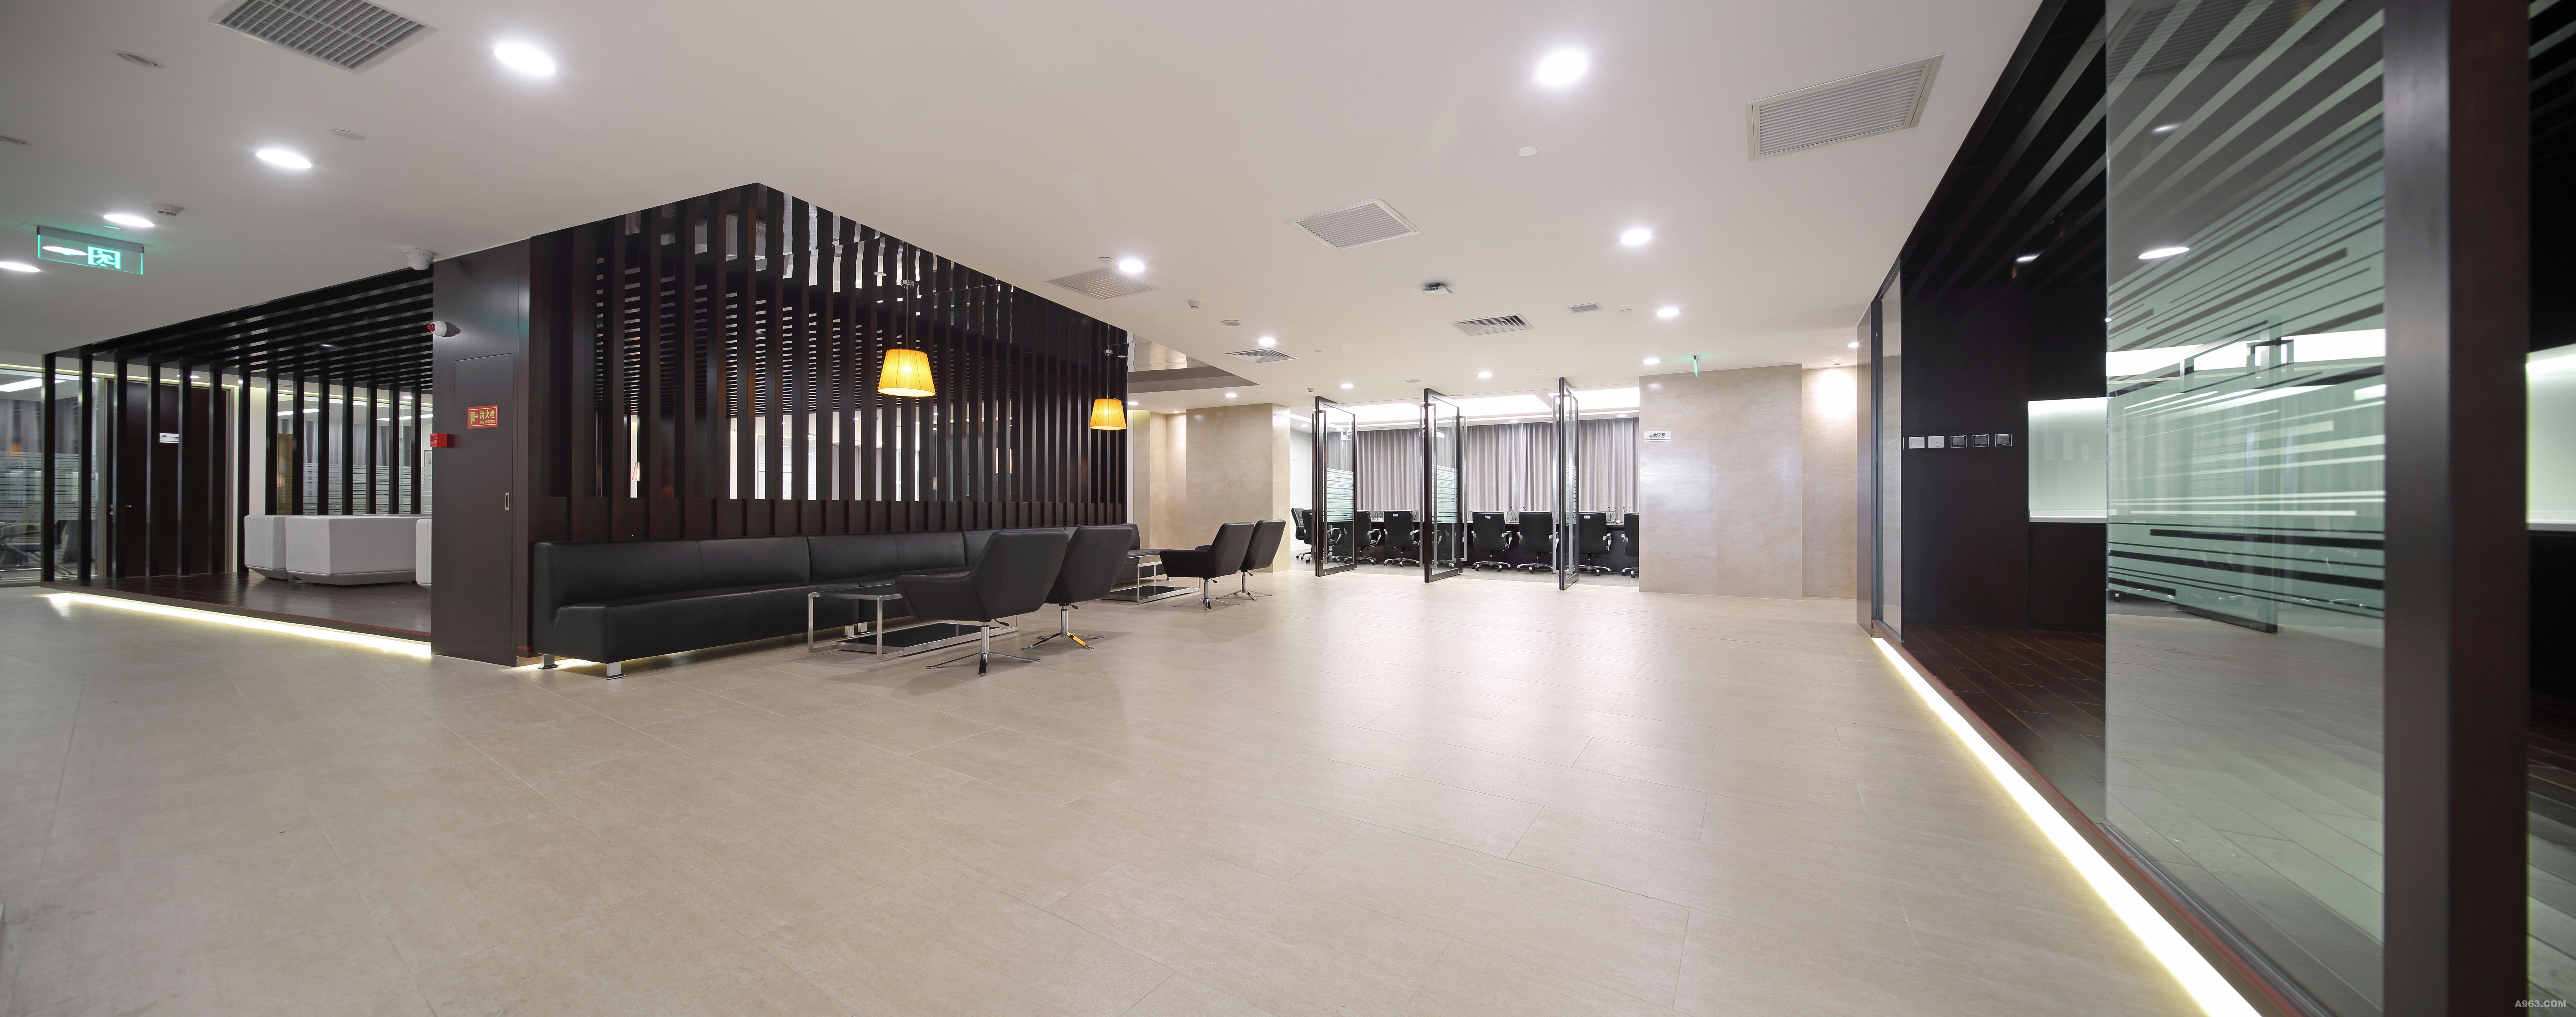 凌云光技术集团总部办公楼 - 办公空间 - 北京艾迪尔建筑装饰工程股份有限公司设计作品案例